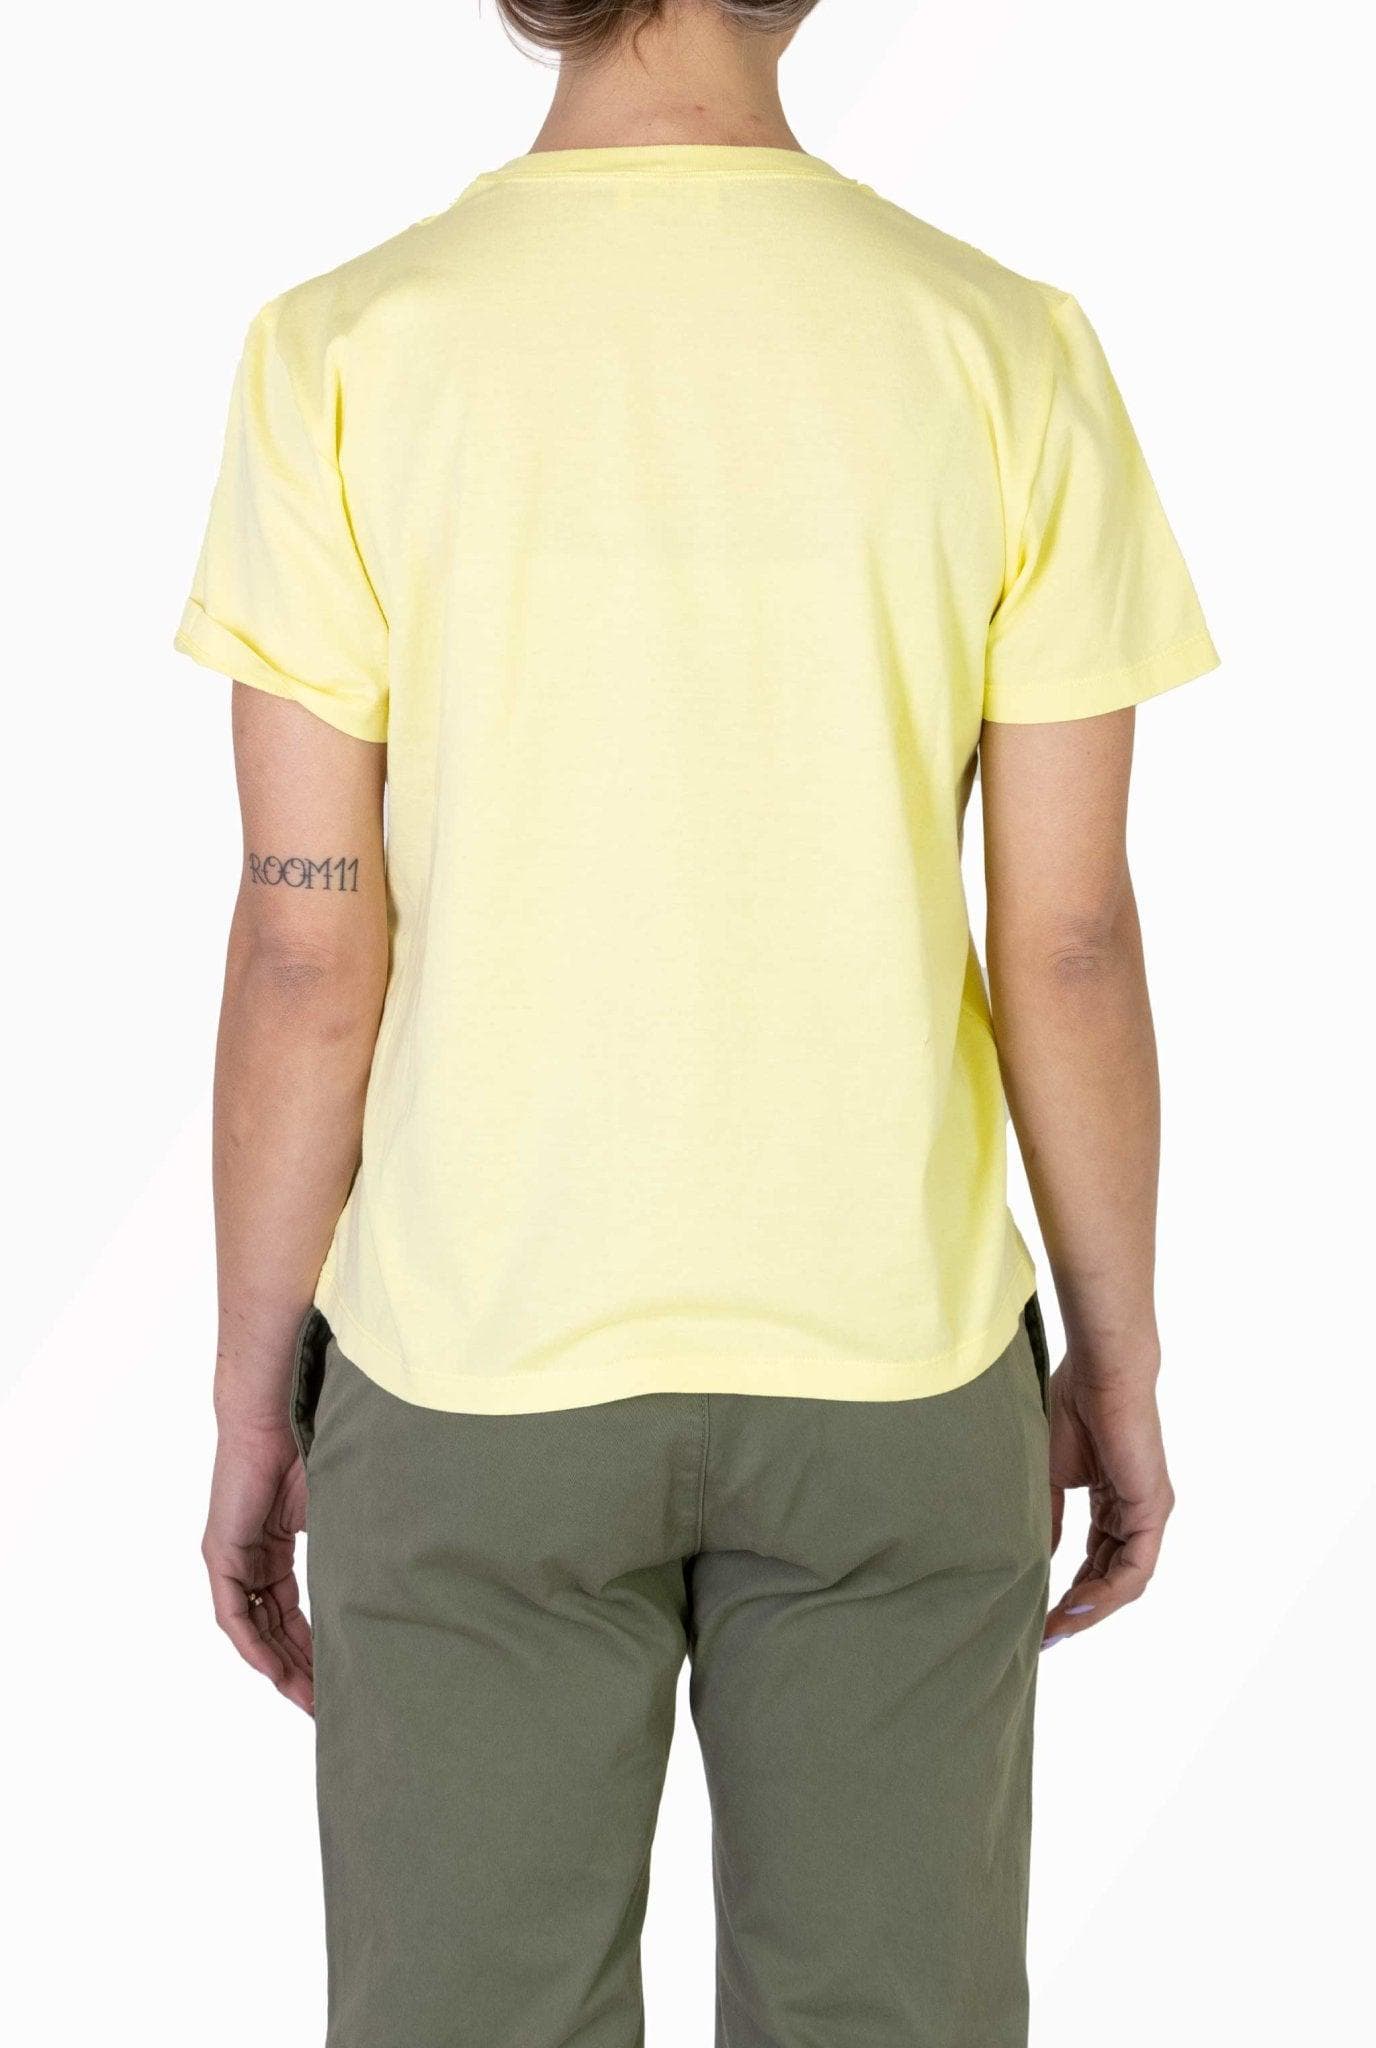 T-shirt gialla con logo REDV- Red Valentino -Giorgioquinto